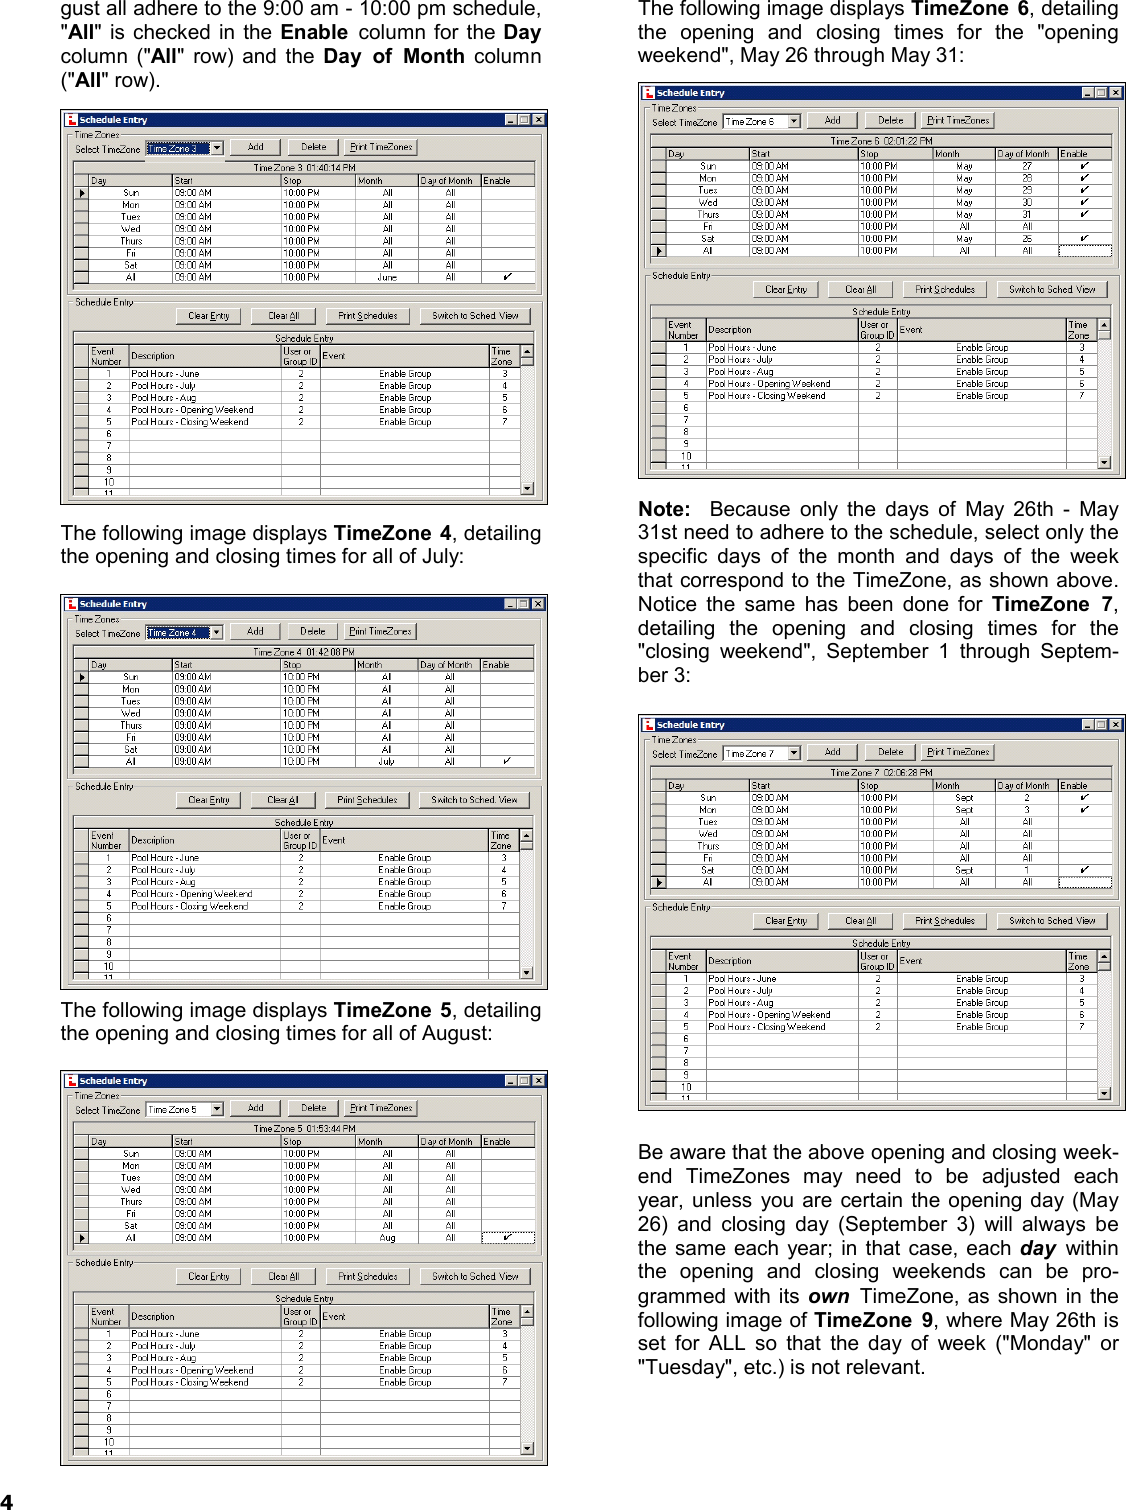 Page 4 of 8 - Alarm Lock DL-Wind_4.1x_TimeZoneSchedScen_WI1633A.05_ DL-Windows Timezone Scheduling Scenario Examples (v4.1x) DL-Wind 4.1x Time Zone Sched Scen WI1633A.05